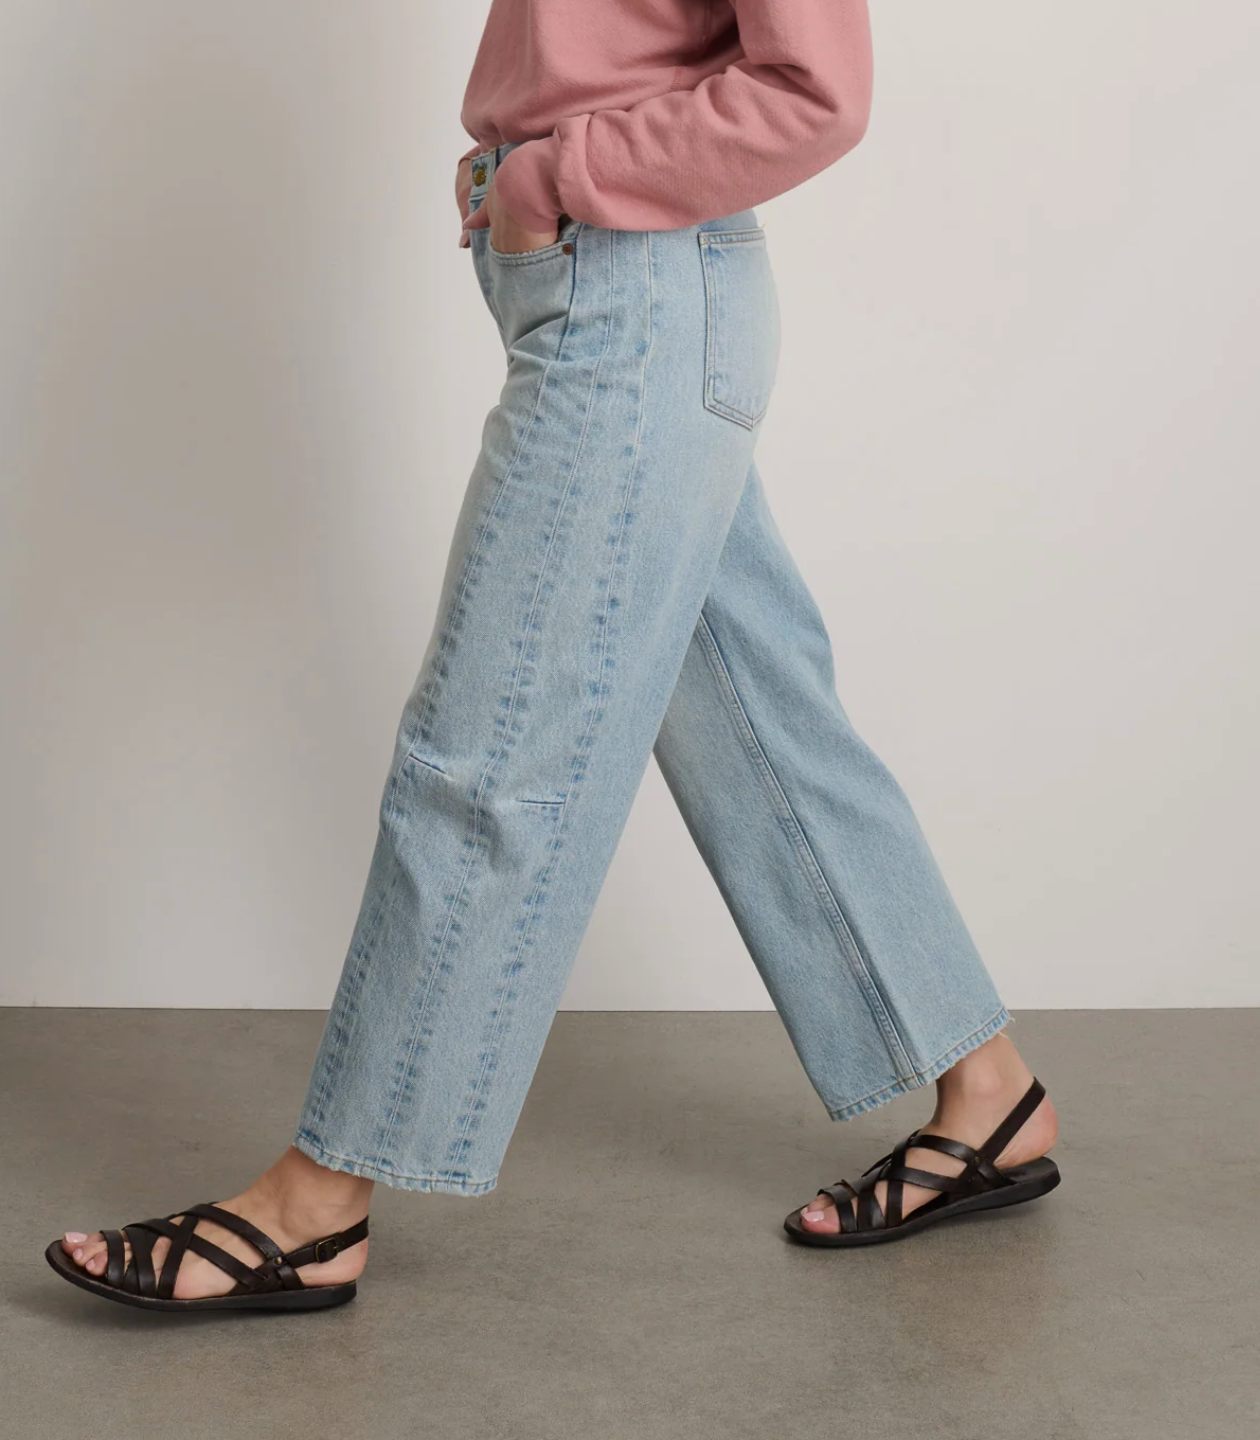 B Sides - Slim Lasso Super Light Vintage Jeans - Image 2 of 3